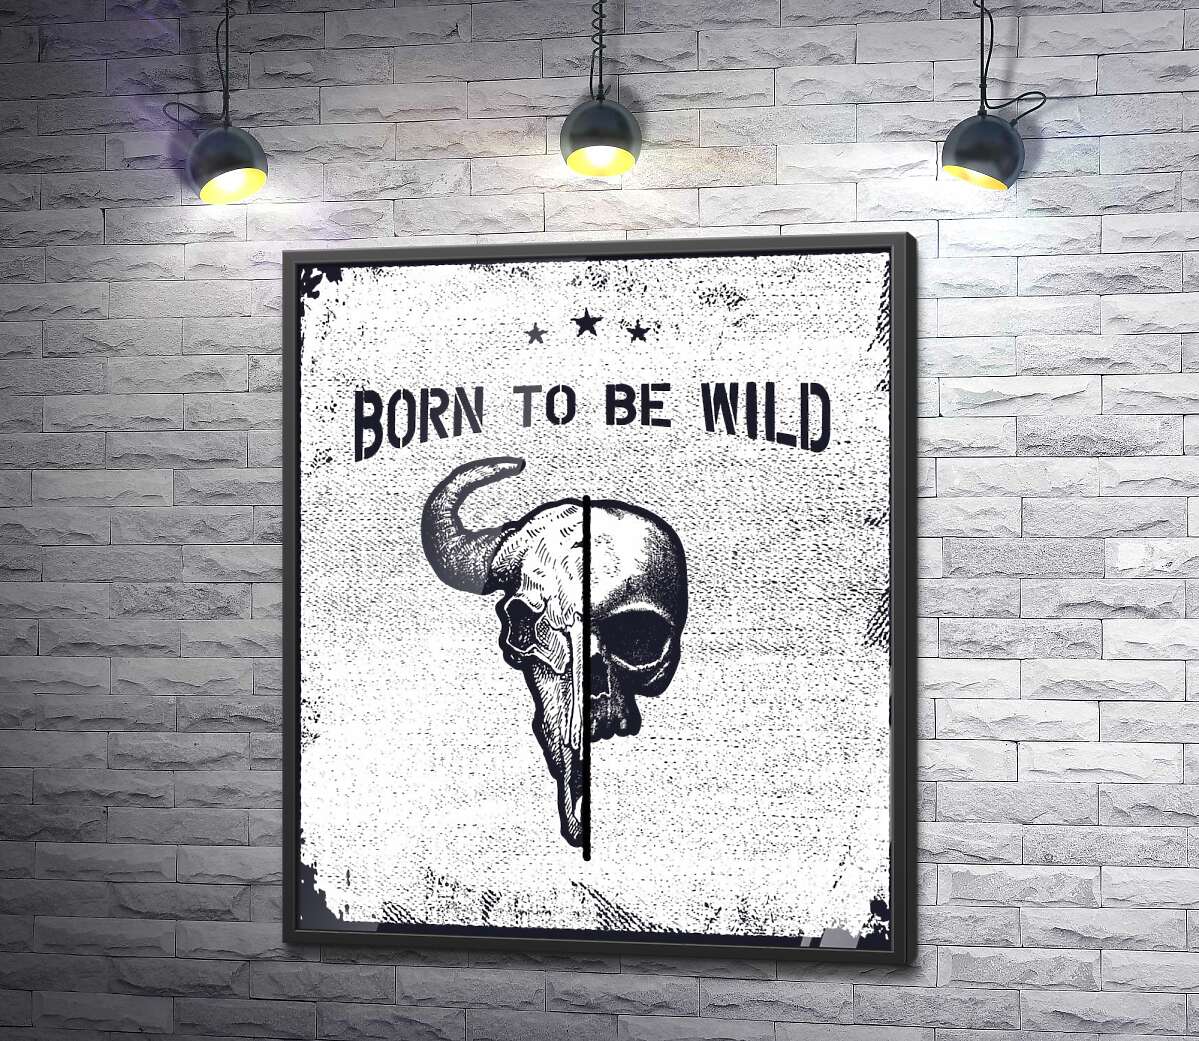 постер Єднання черепів людини та бика під фразою "born to be wild"